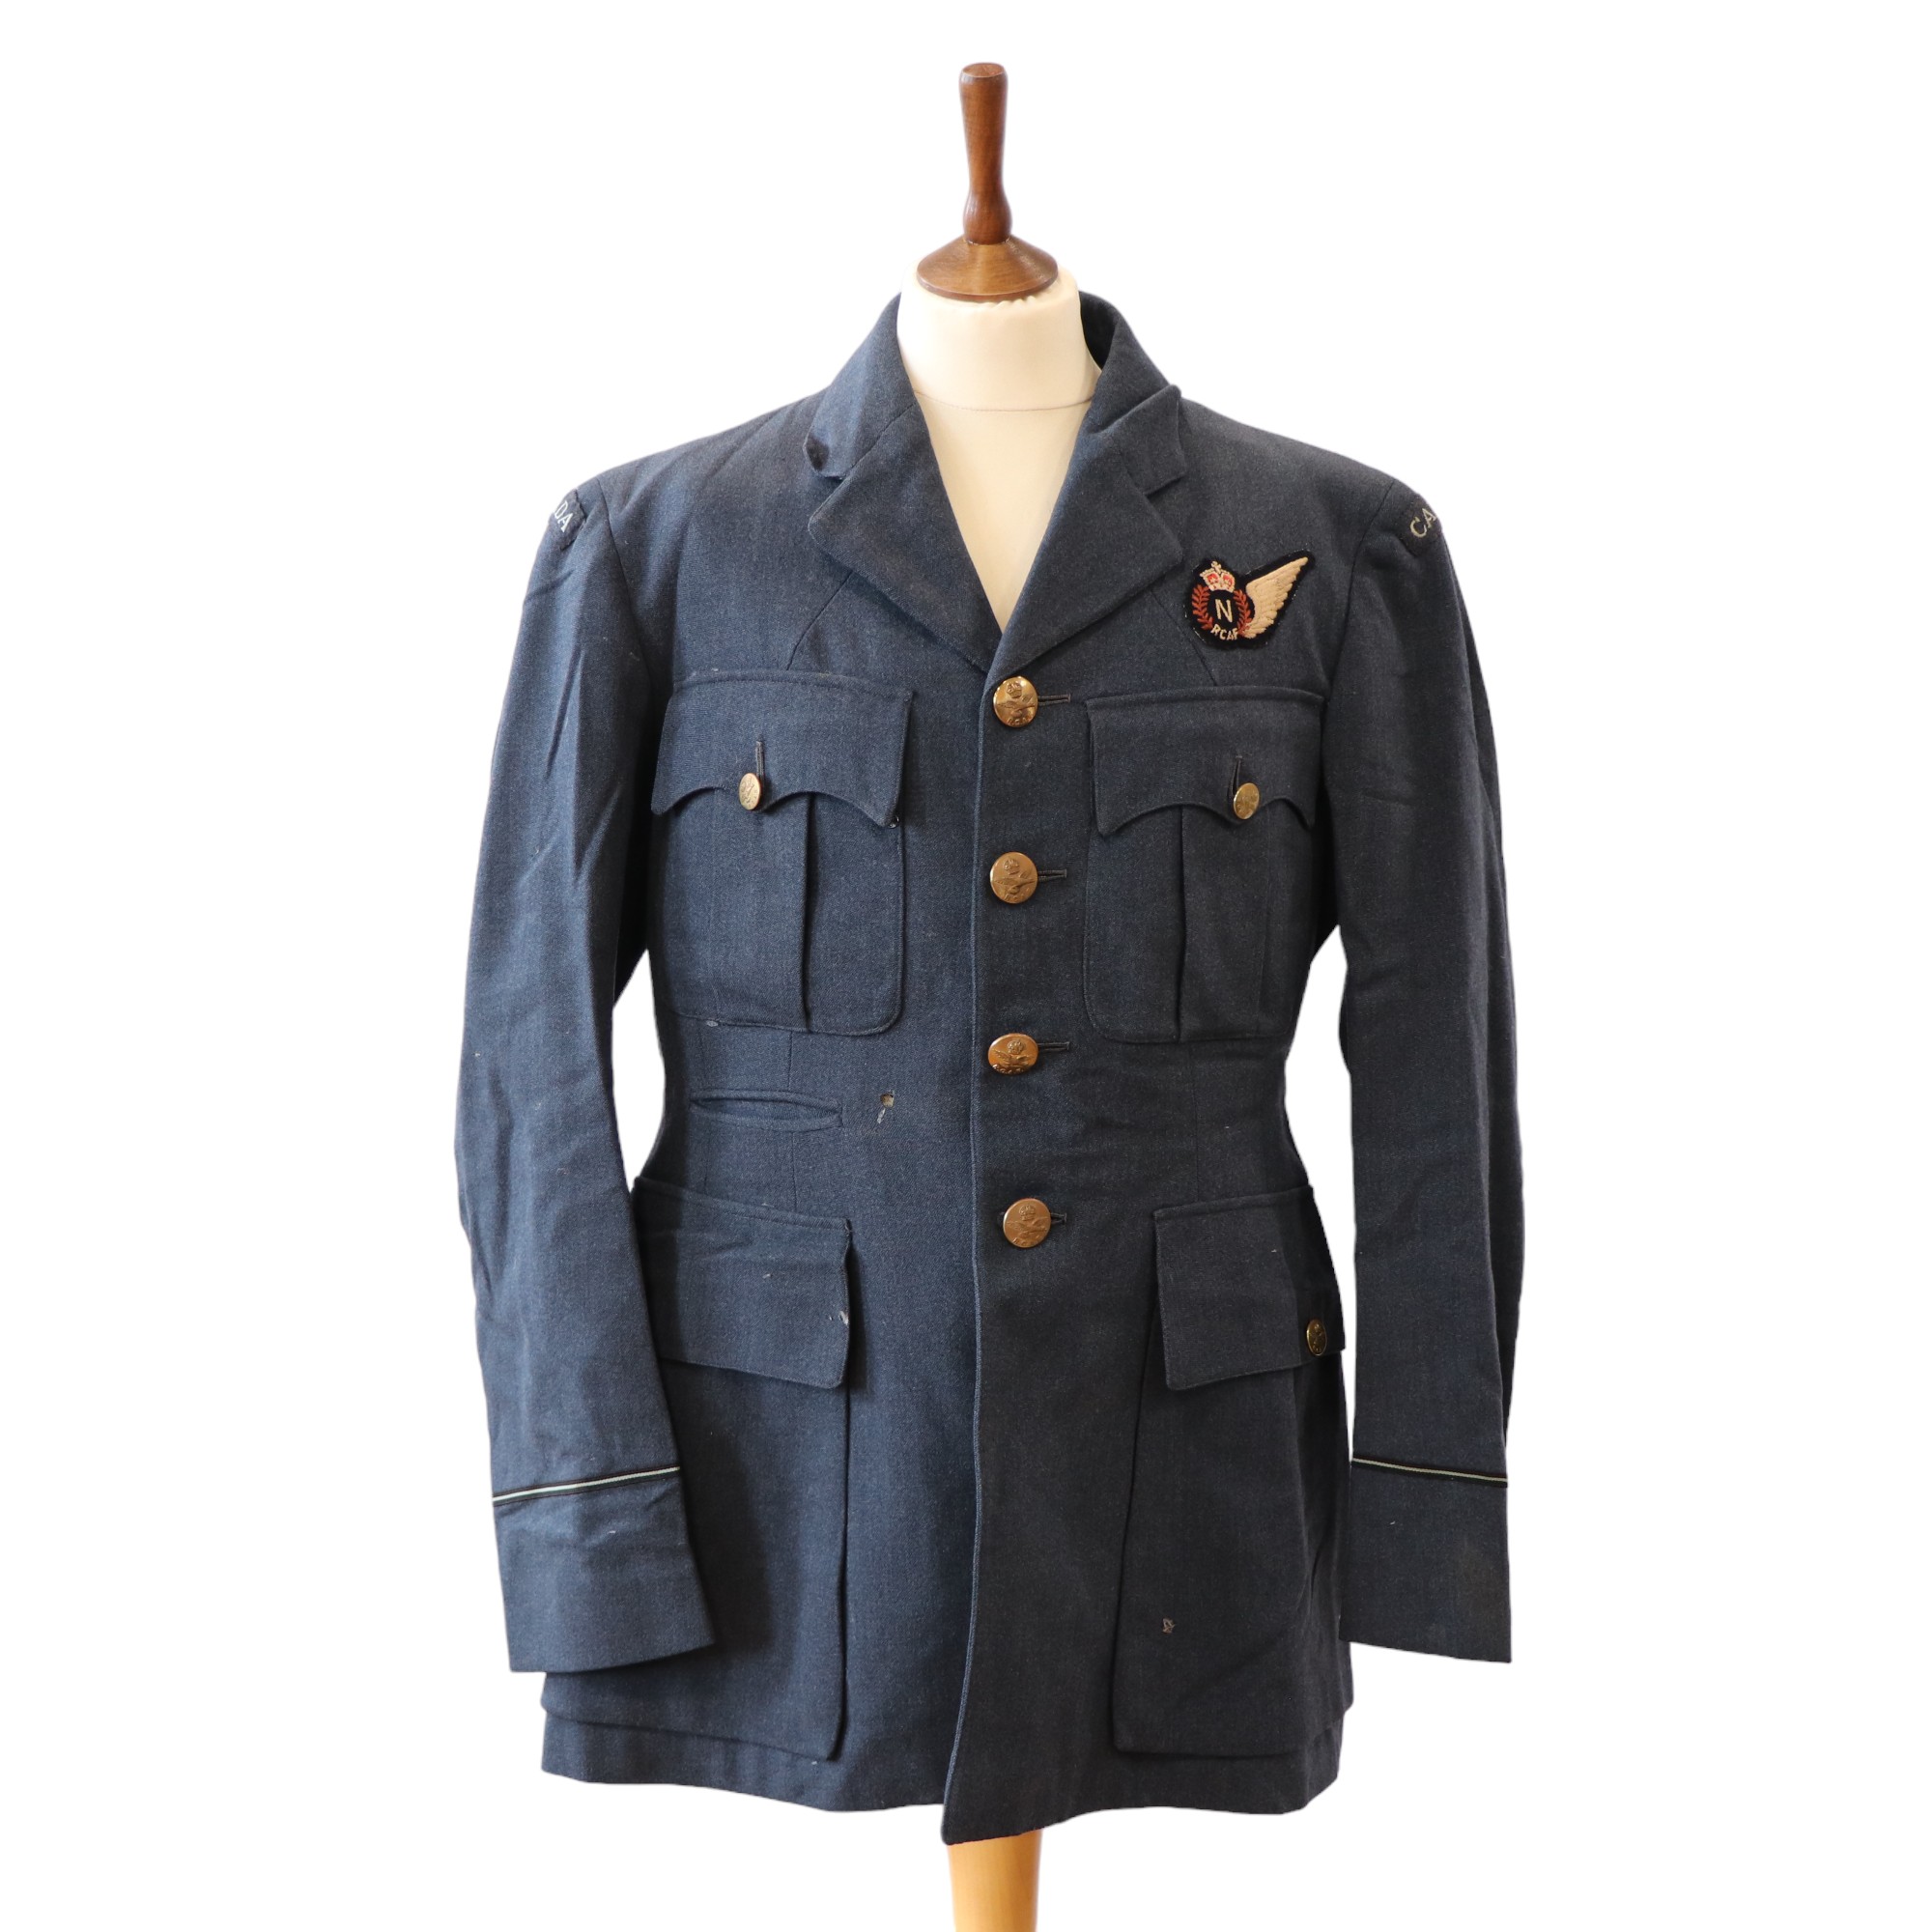 A Second World War Royal Canadian Air Force Pilot Officer Navigator's tunic